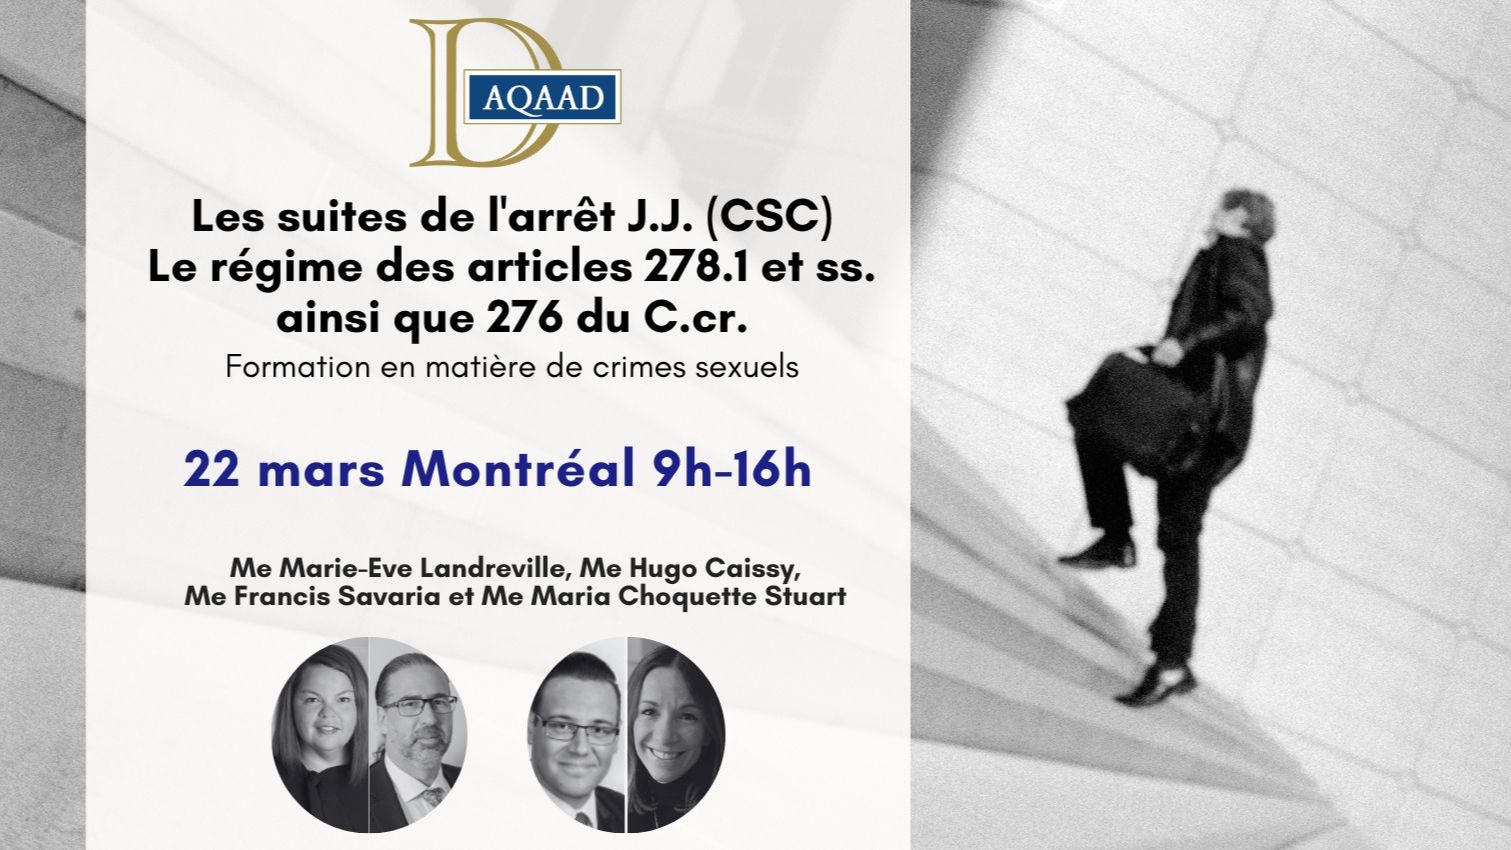 Montréal-Les suites de l'arrêt J.J. (CSC) - Le régime des articles 276 du C.cr. et 278.1 et ss.